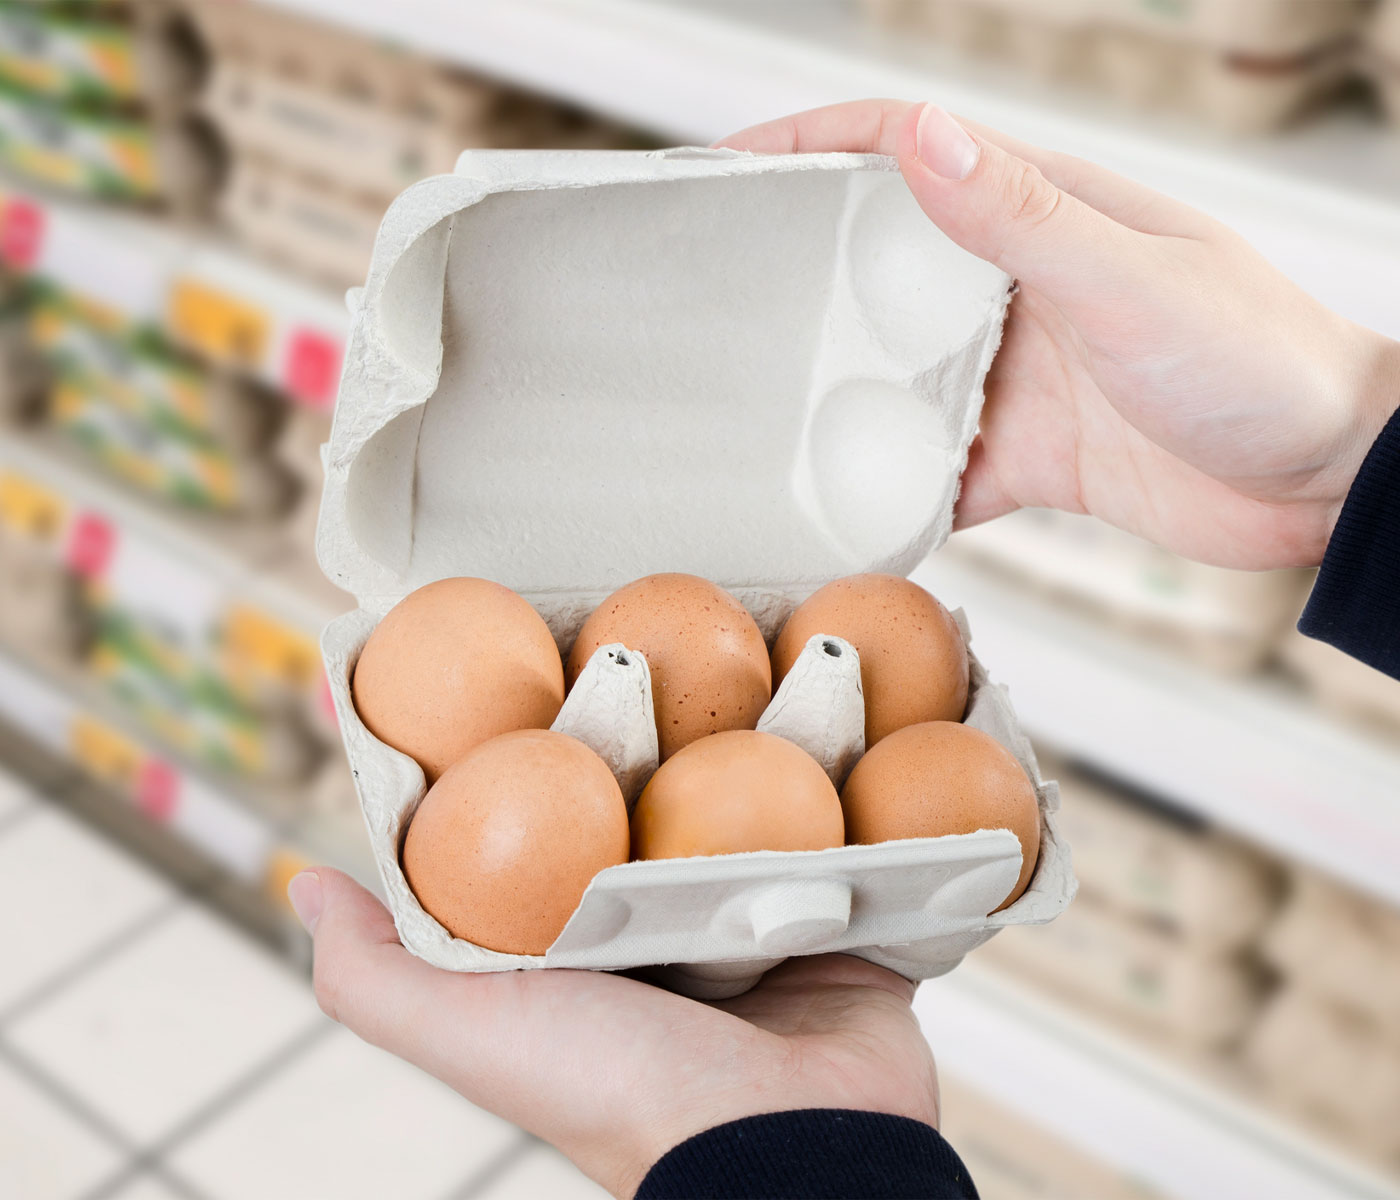 Consumo de huevos en 2022: crece el valor, no el volumen